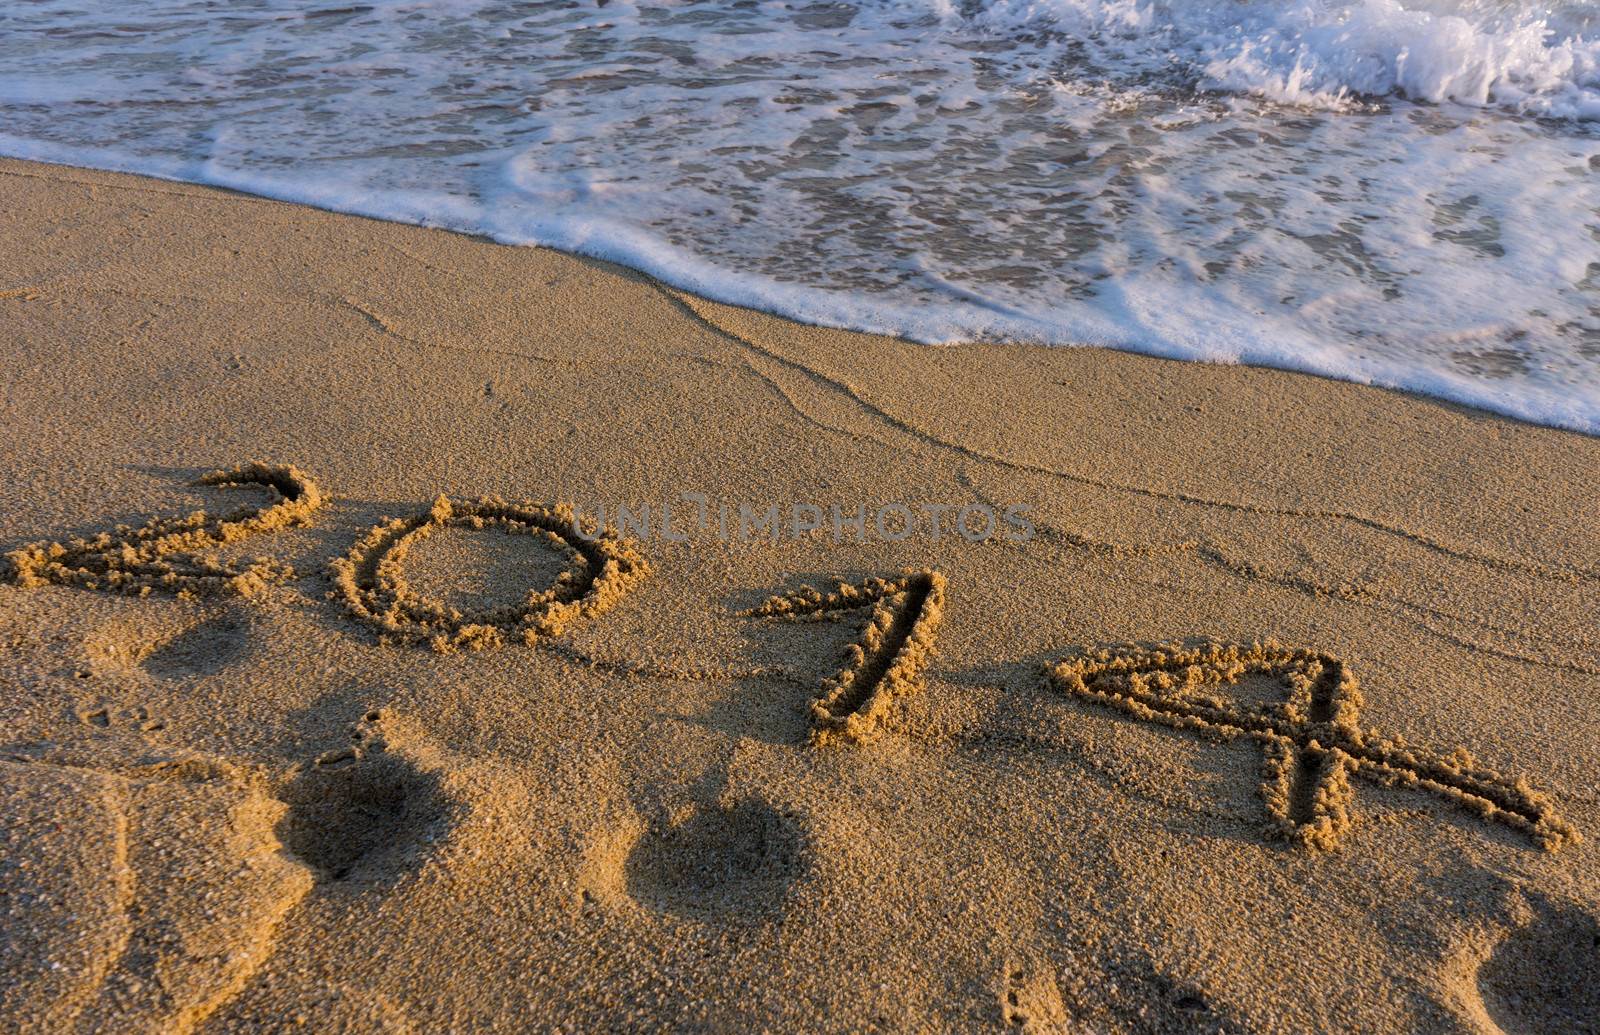 Year 2014 on the beach by photosil